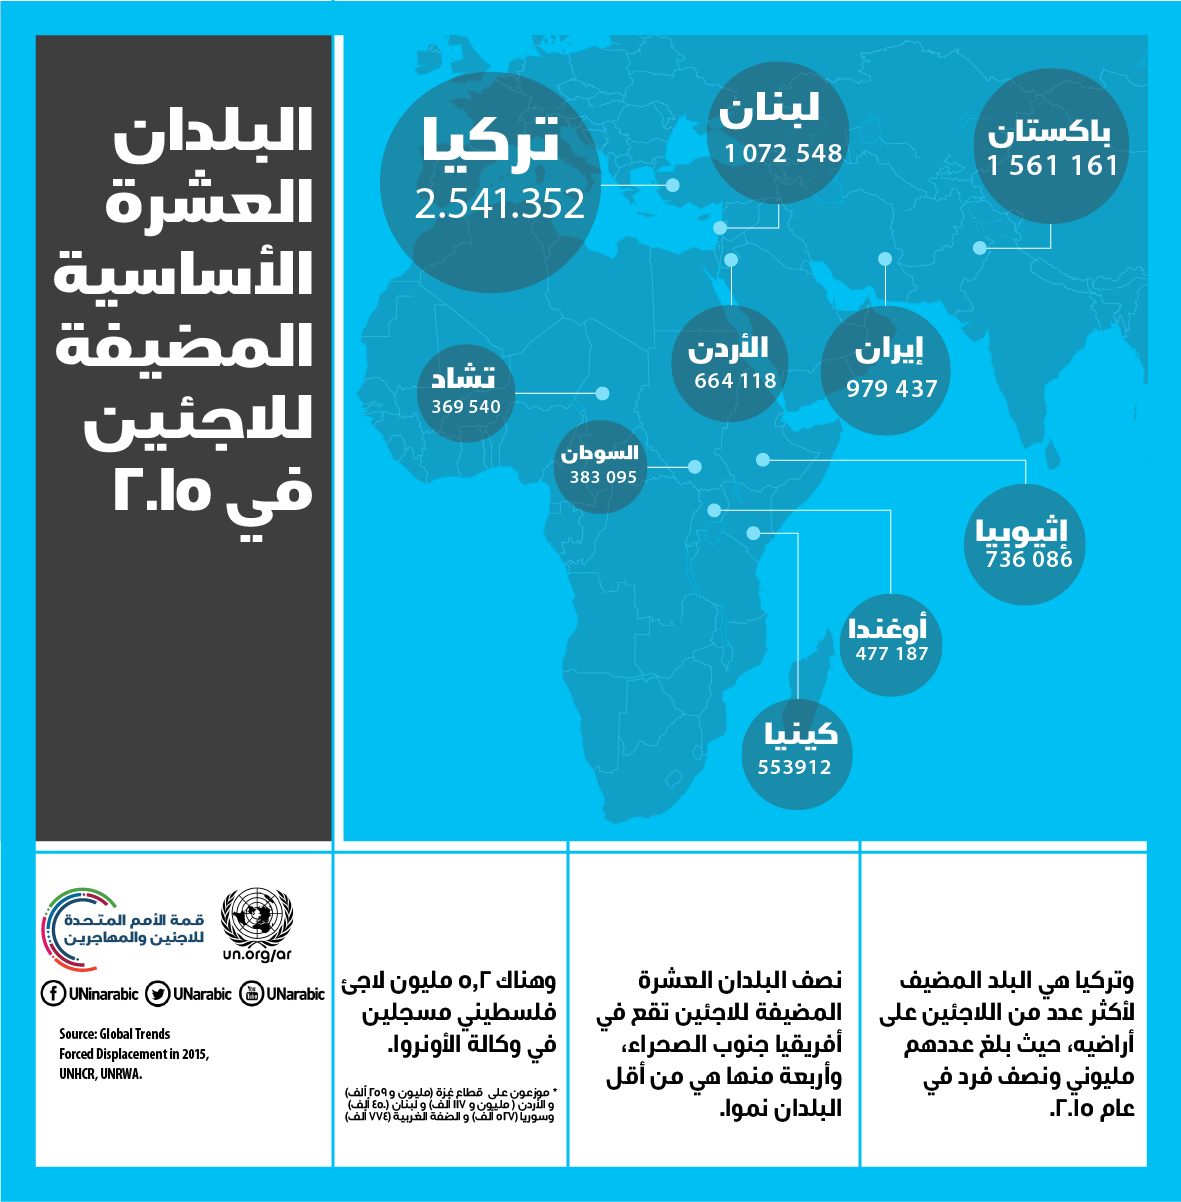 البلدان العشرة الأساسية المضيفة للاجئين في عام 2015